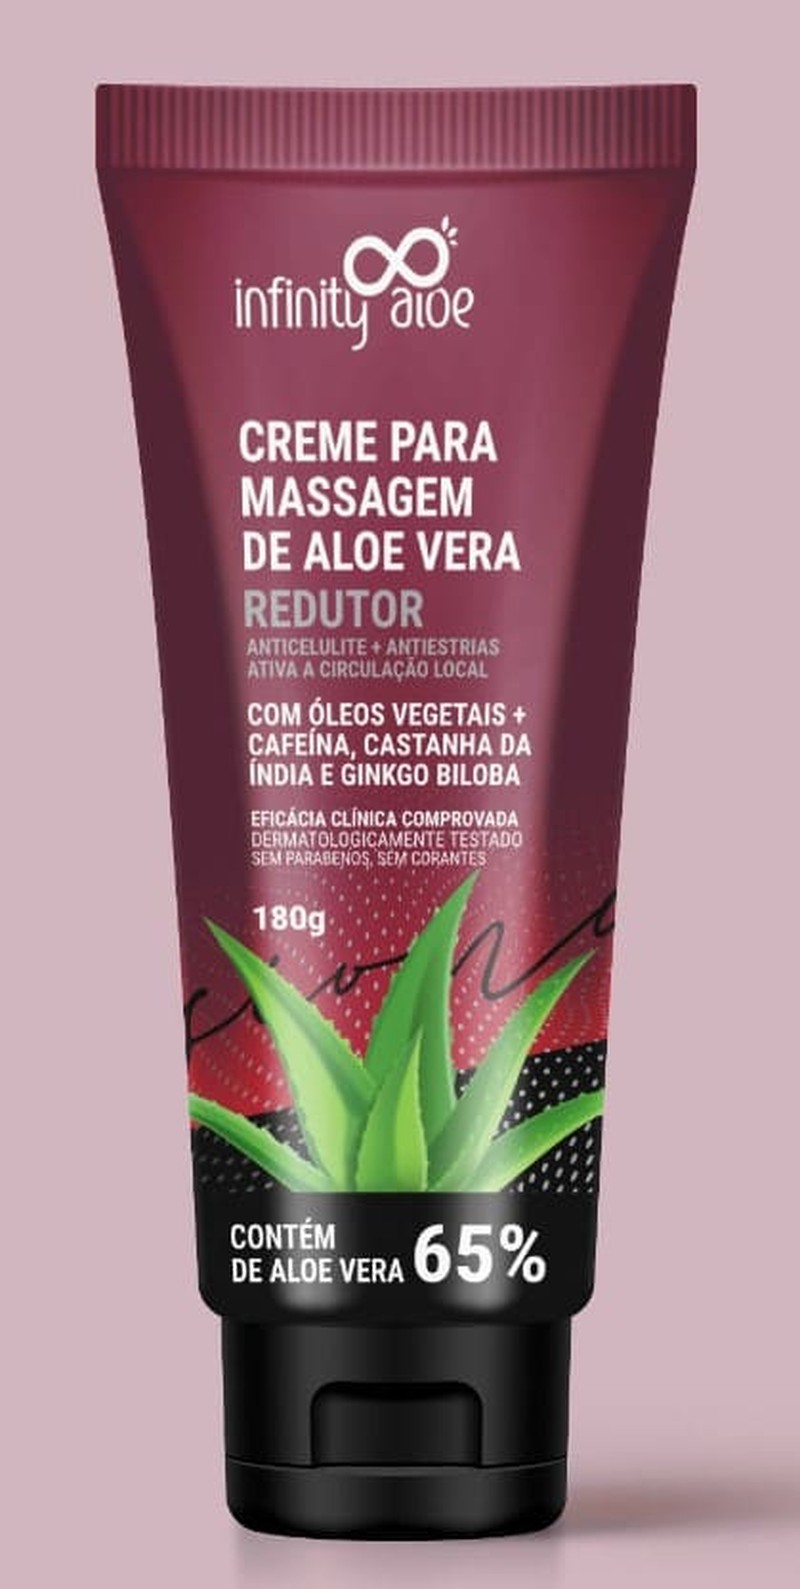 Creme Para Massagem de Aloe Vera Redutor Anticelulite, Antiestrias, Ativa a Circulação Local 180 g Infinity Aloe